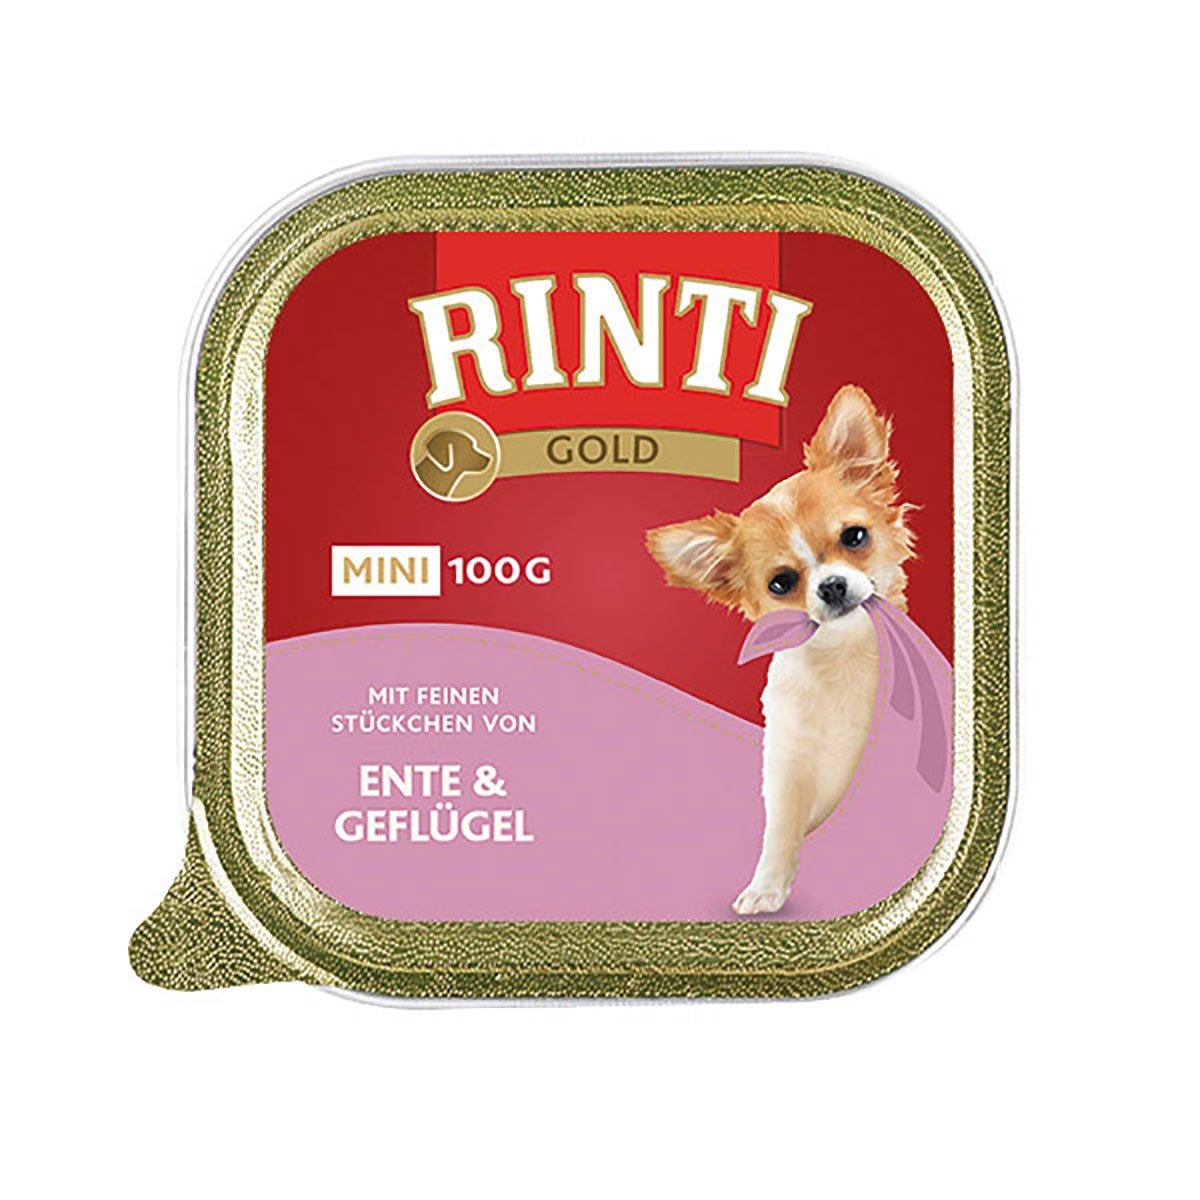 Rinti Gold Mini feine Stückchen von Ente & Geflügel 48x100g